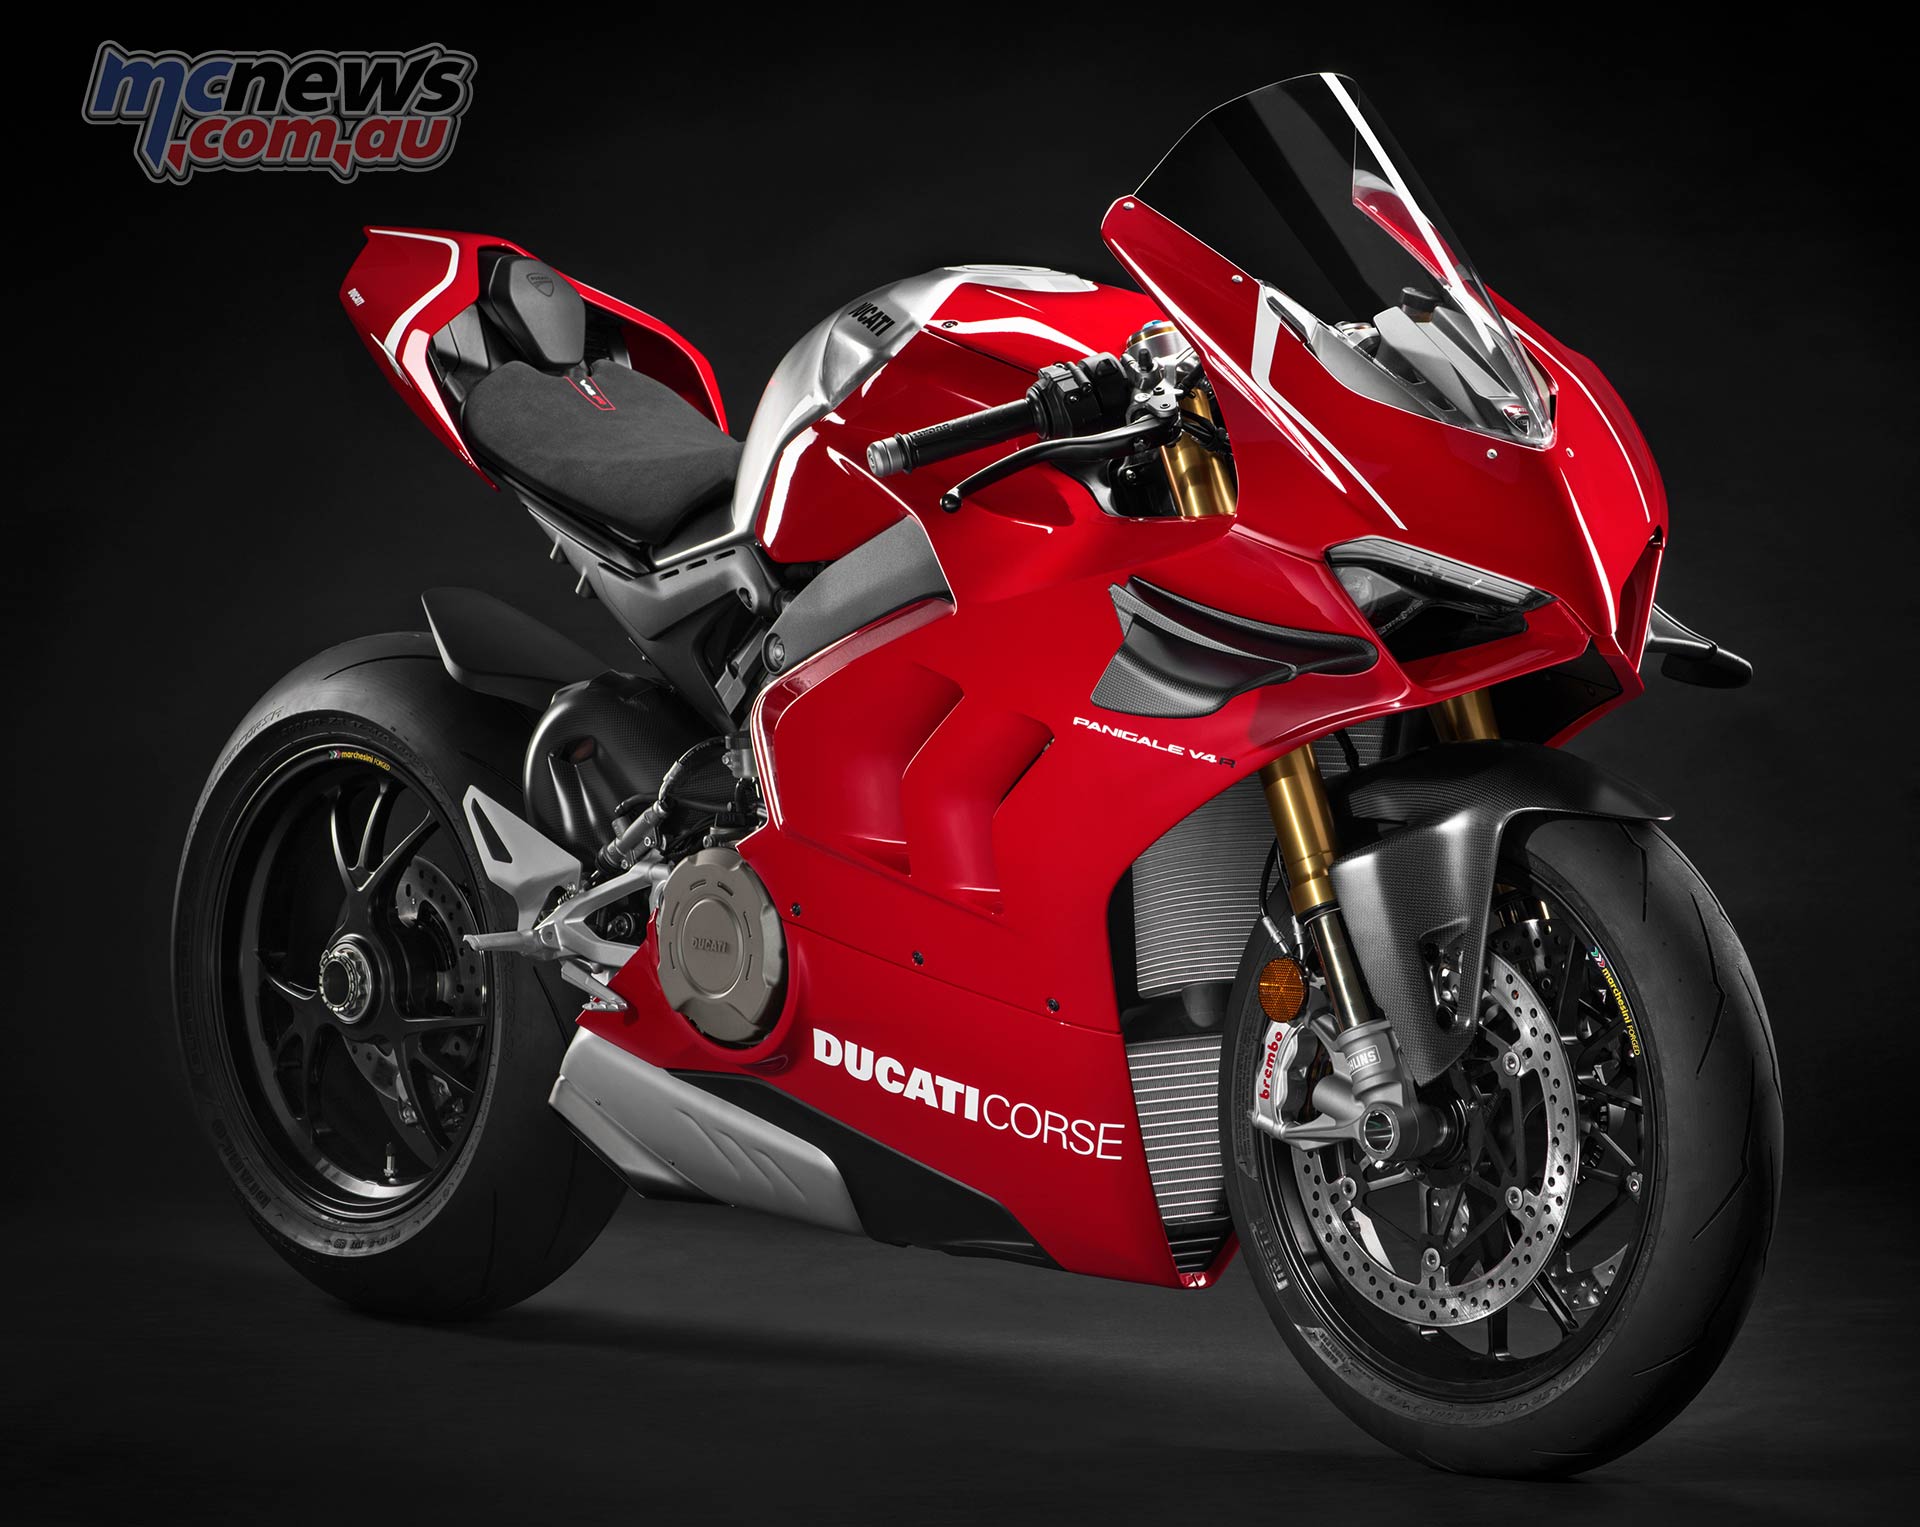 Ducati Panigale V4 R 998cc Racer More Tech Details